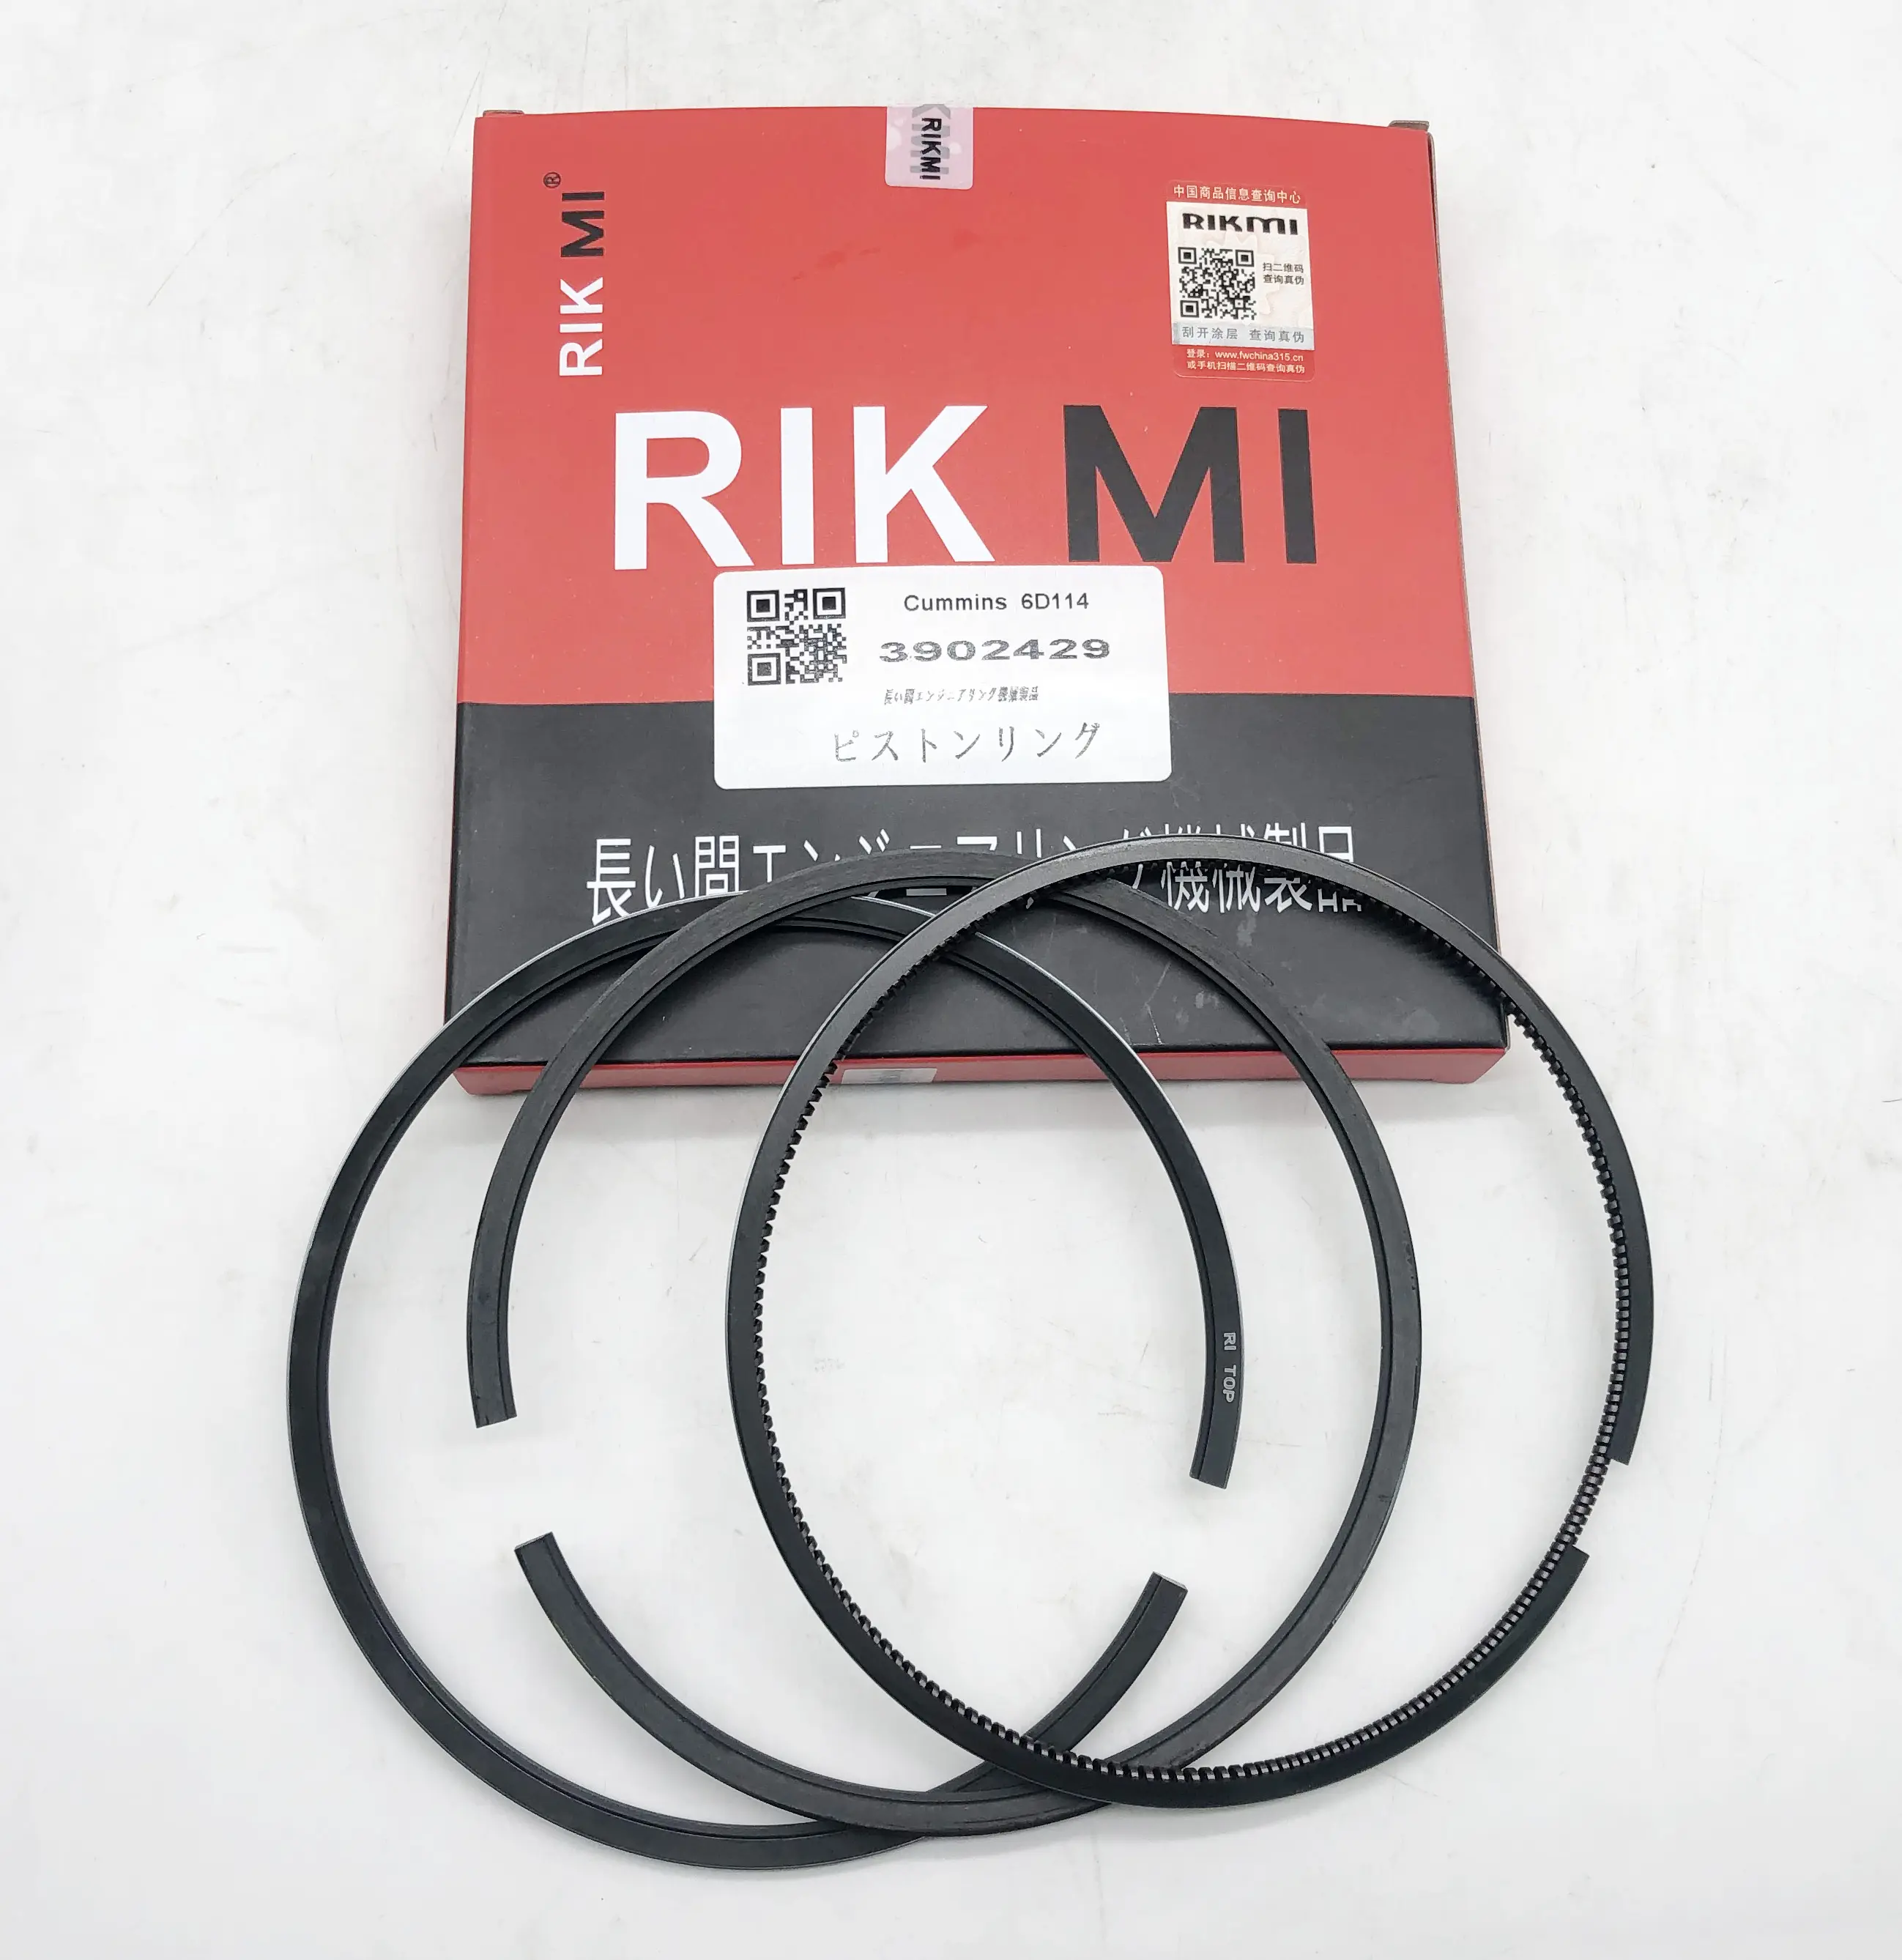 Rikmi مكبس عالي الجودة حلقة ل الكمون 6D114 محرك الديزل 3902429